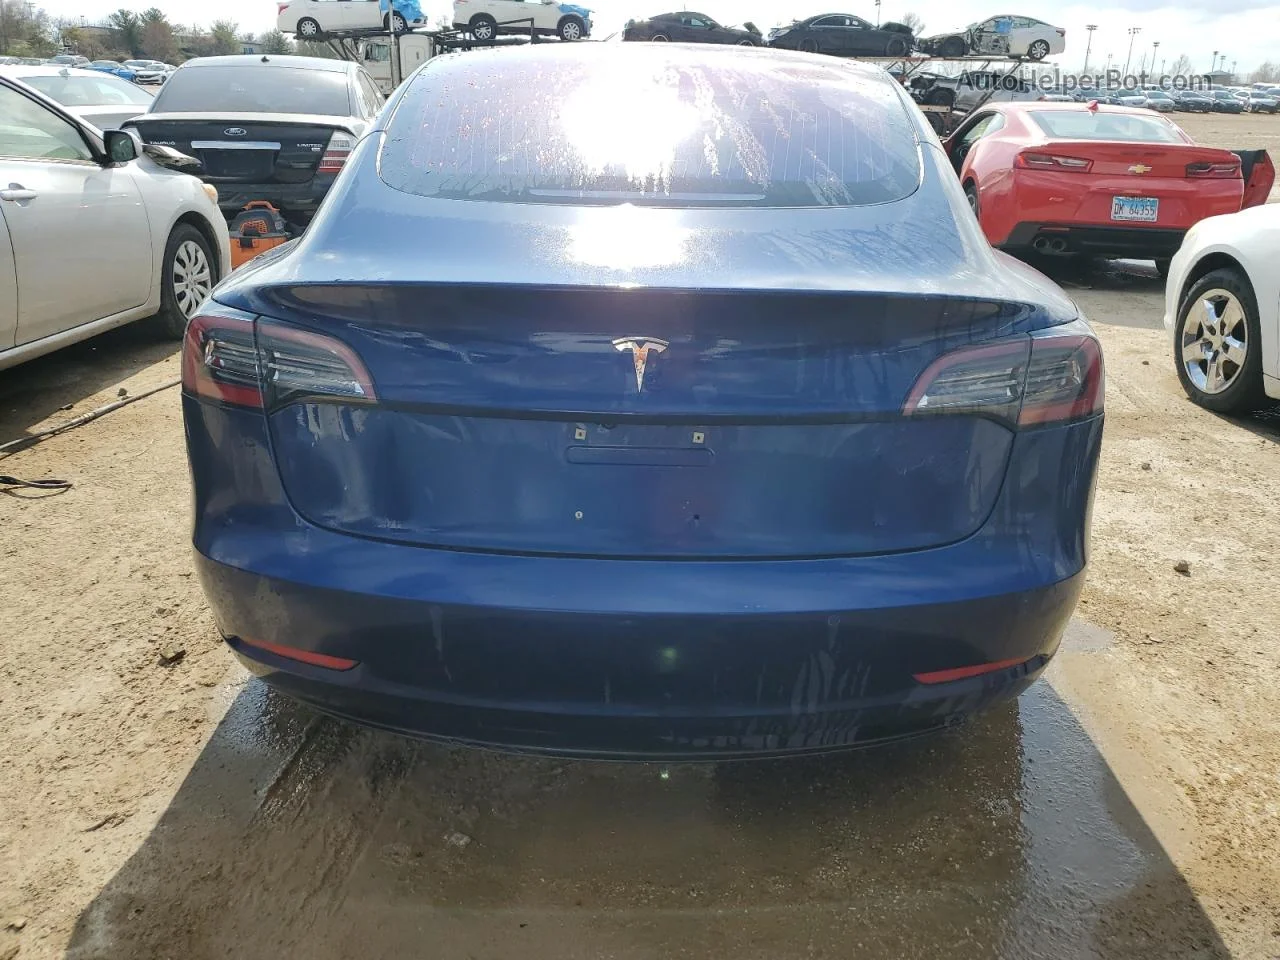 2018 Tesla Model 3  Blue vin: 5YJ3E1EAXJF014643